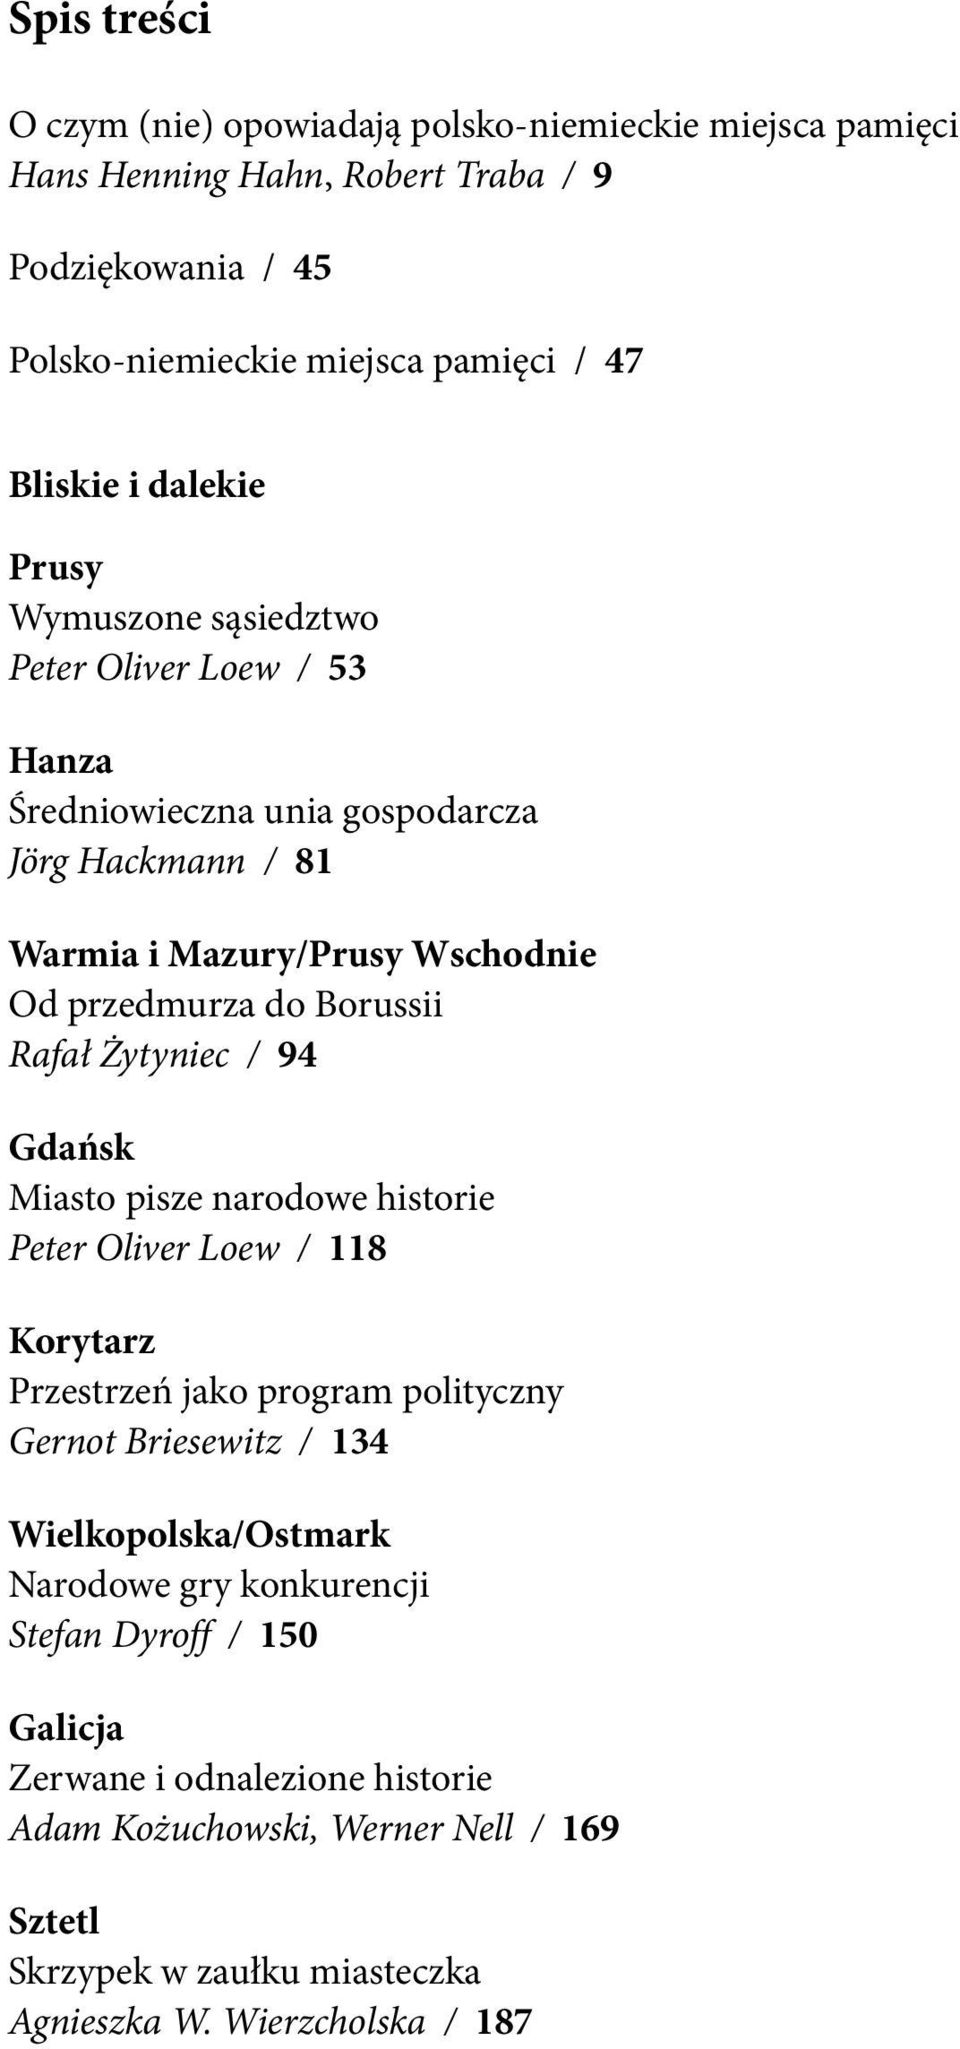 Rafał Żytyniec / 94 Gdańsk Miasto pisze narodowe historie Peter Oliver Loew / 118 Korytarz Przestrzeń jako program polityczny Gernot Briesewitz / 134 Wielkopolska/Ostmark